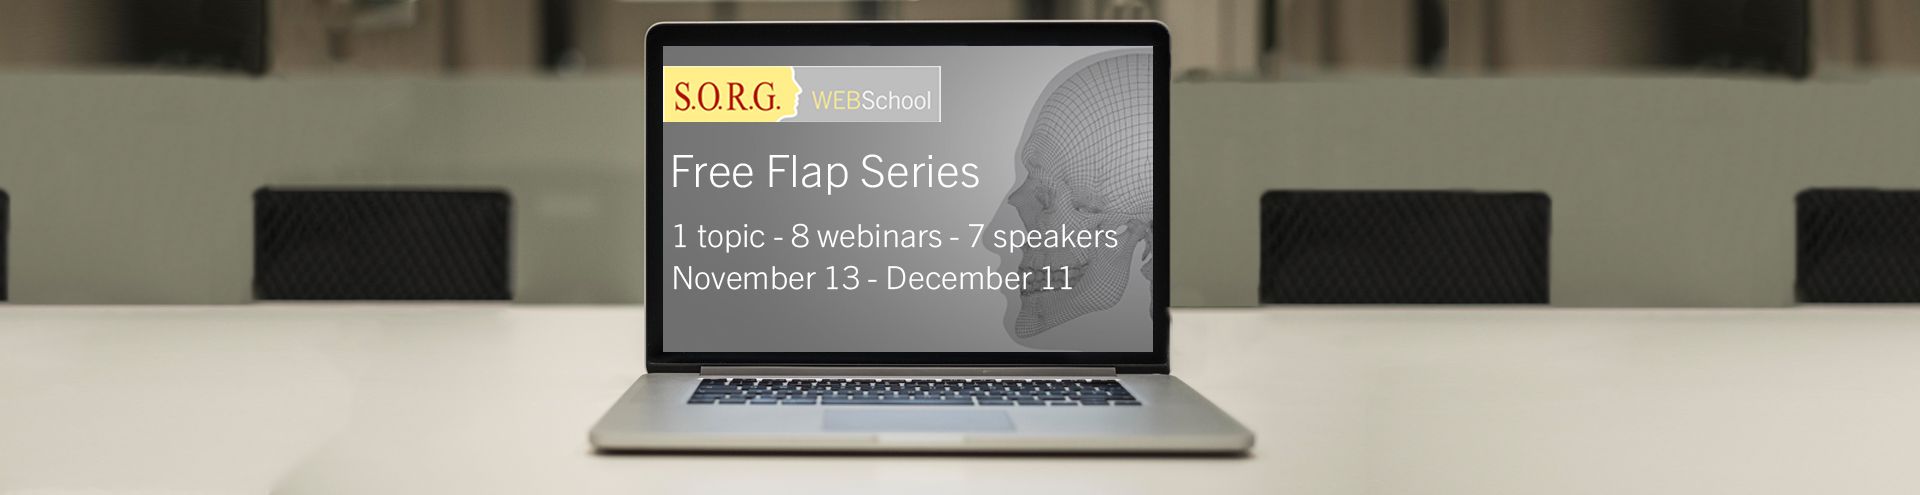 SORG WEBSchool Free Flap Series